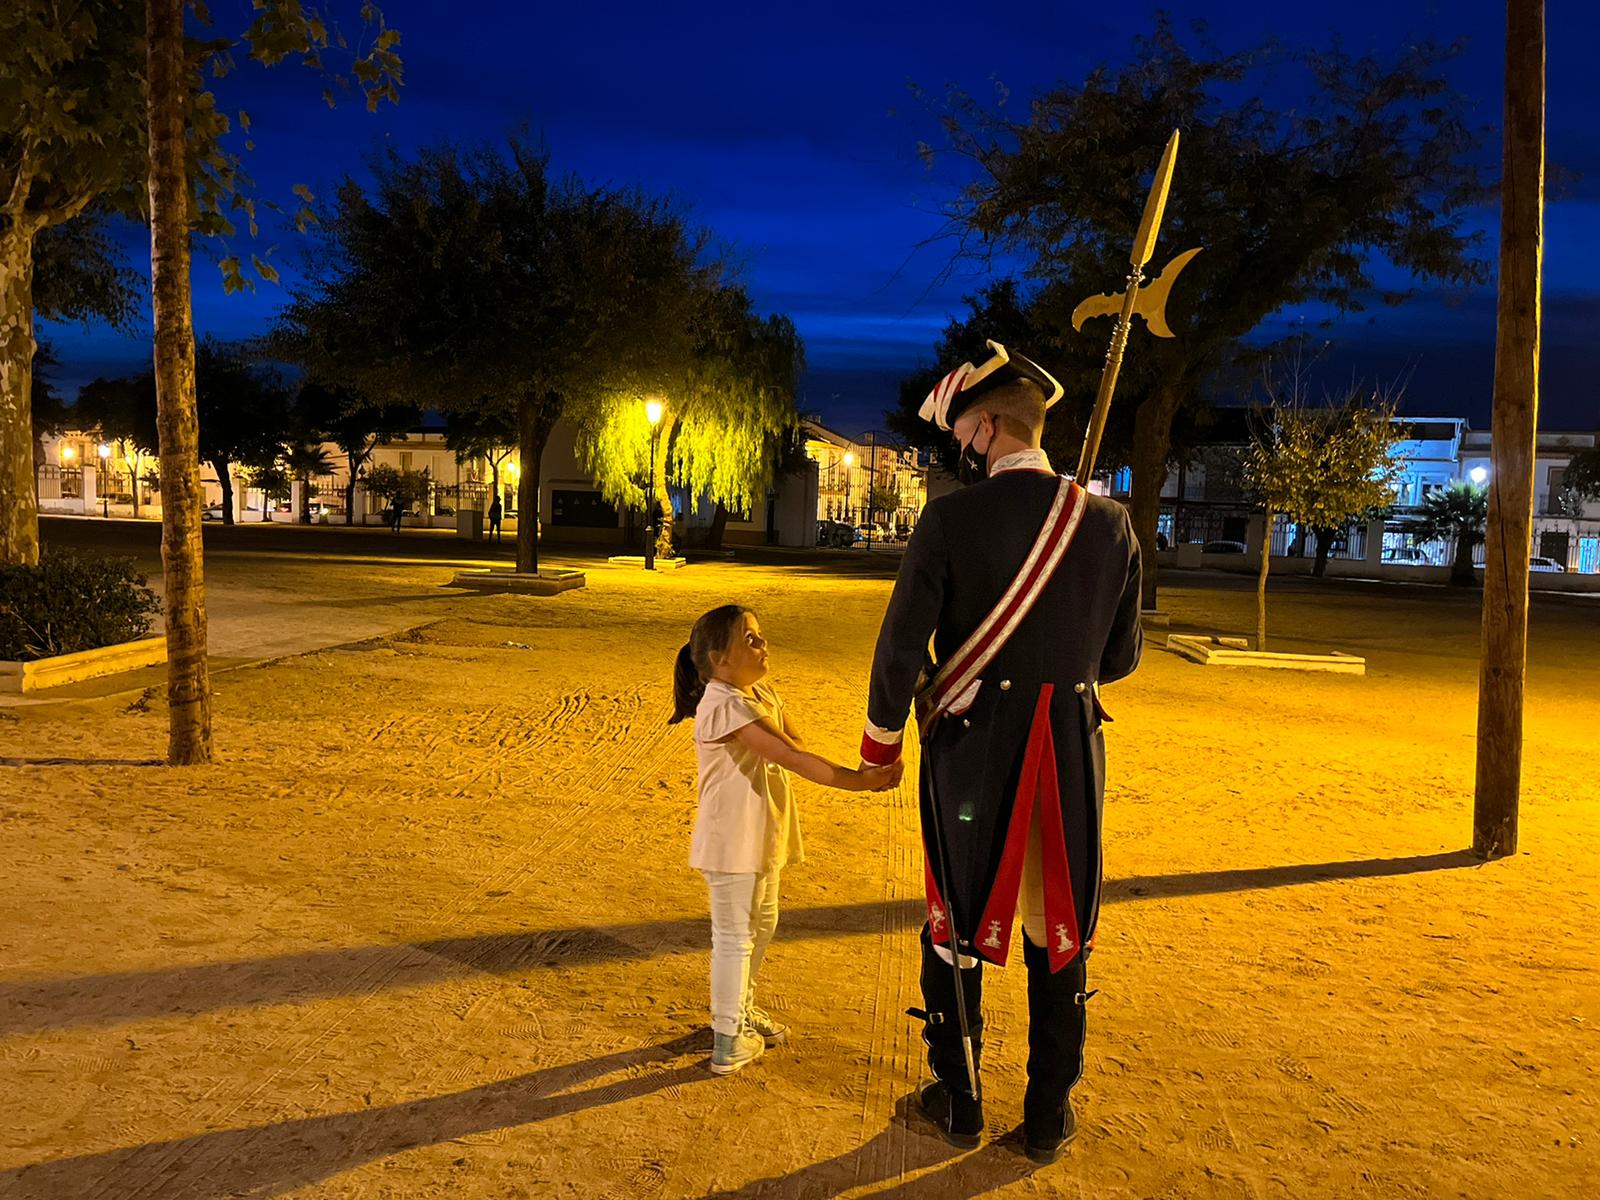 Foto ganadora del concurso. Un alabardero acompaña a una niña en un parque de Almonte